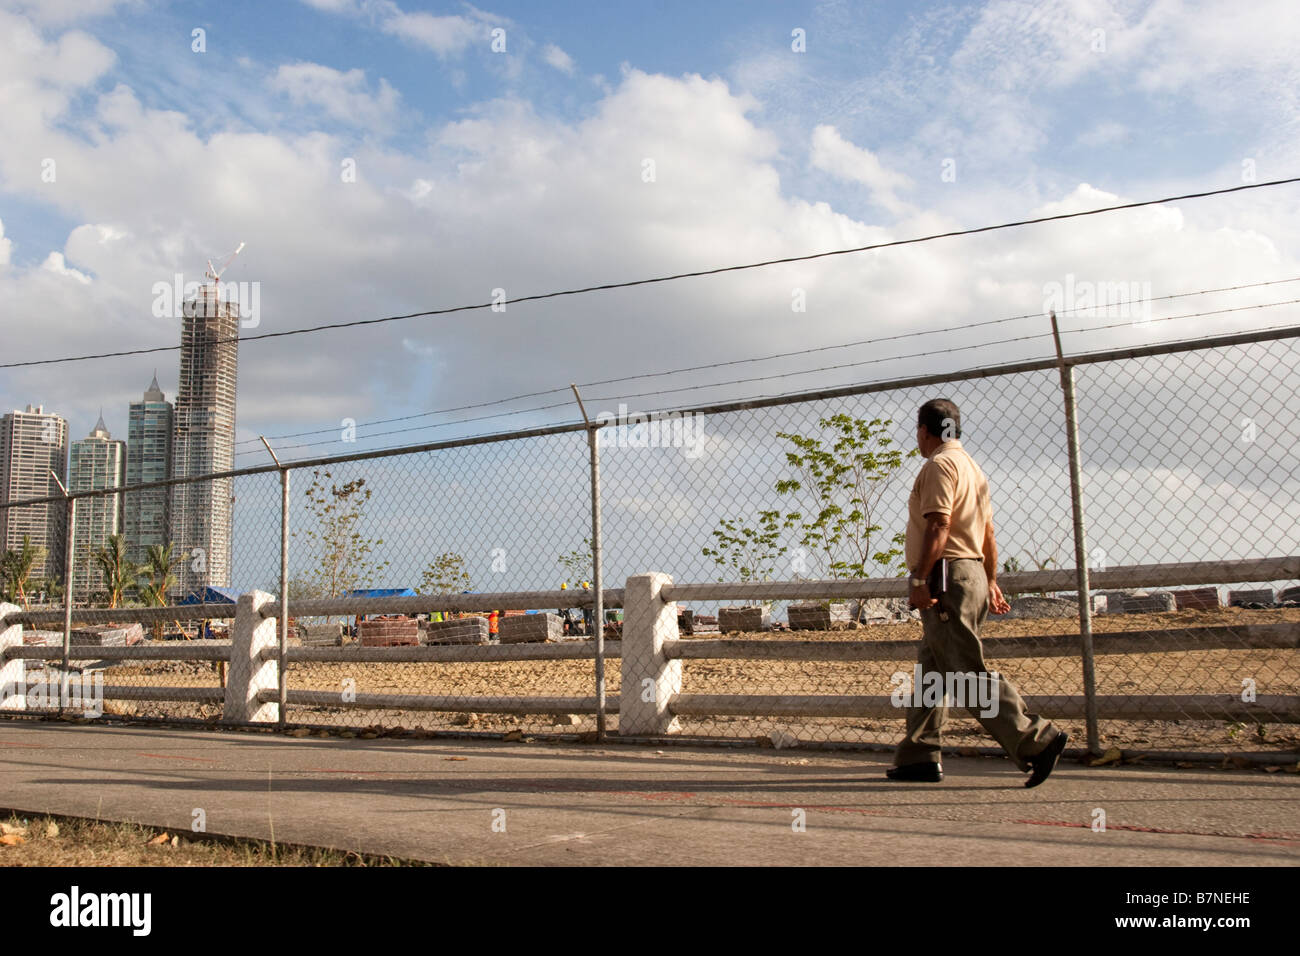 Un uomo cammina nella parte anteriore della circonvallazione costiera sito in costruzione. Balboa Avenue, Città di Panama, Repubblica di Panama, America Centrale Foto Stock